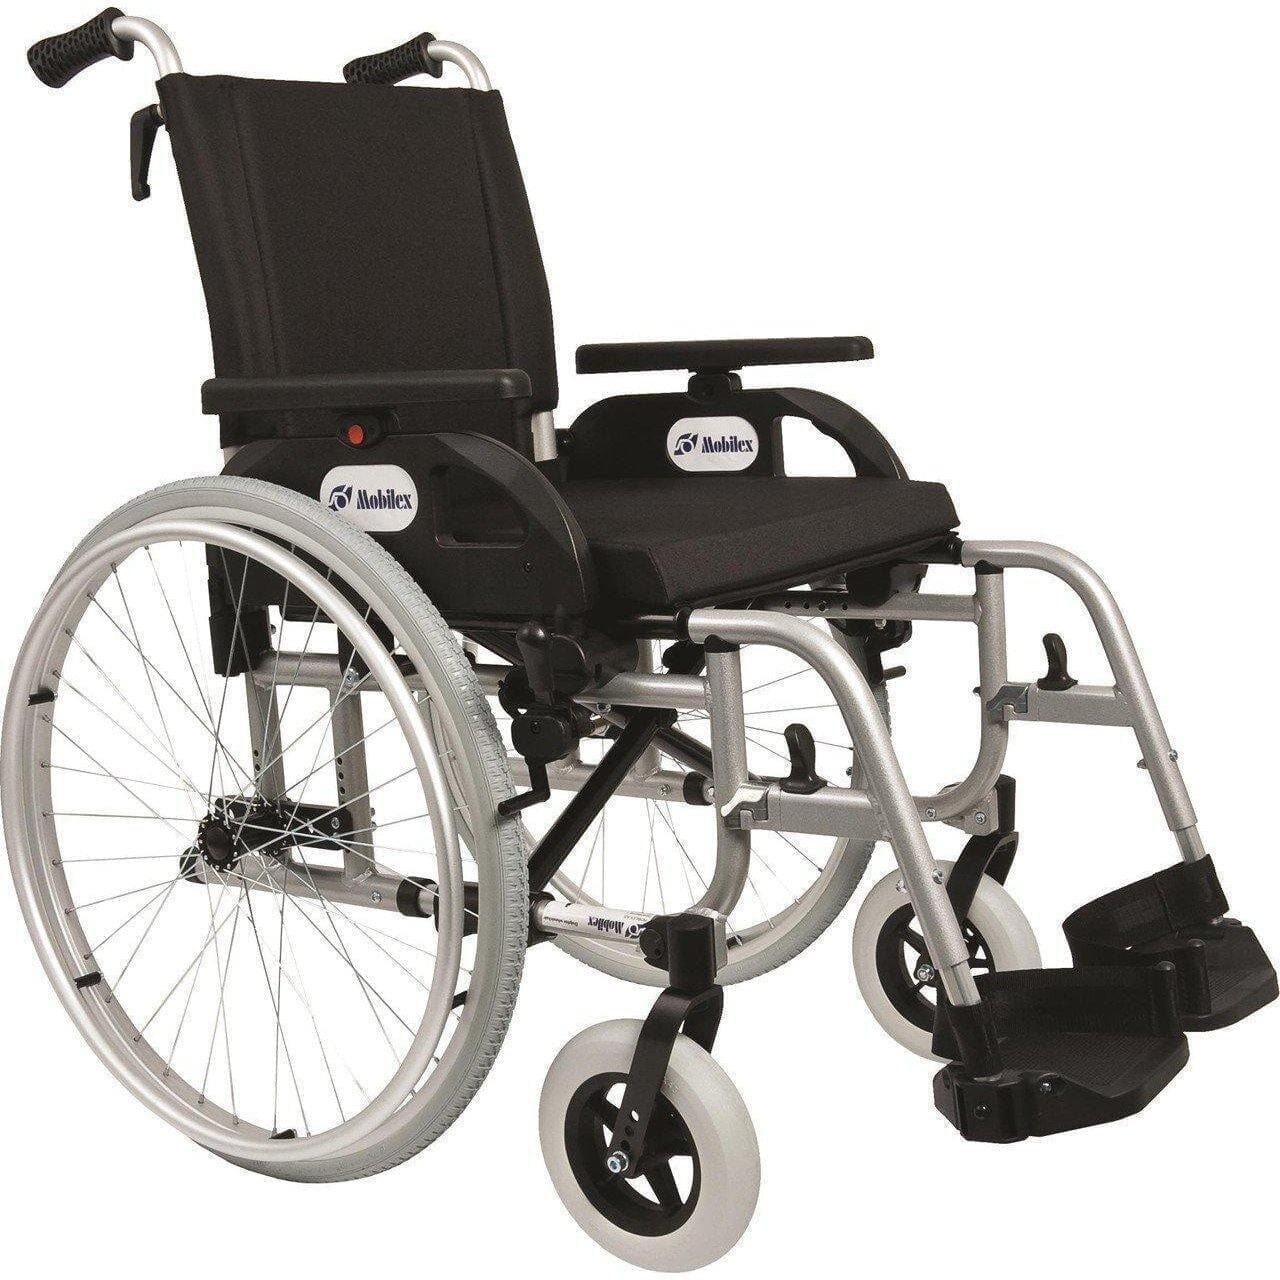 Billede af DOLPHIN -Letvægts kørestol. Luksus model. 4 slags sædebredder. 2 typer, 54 cm